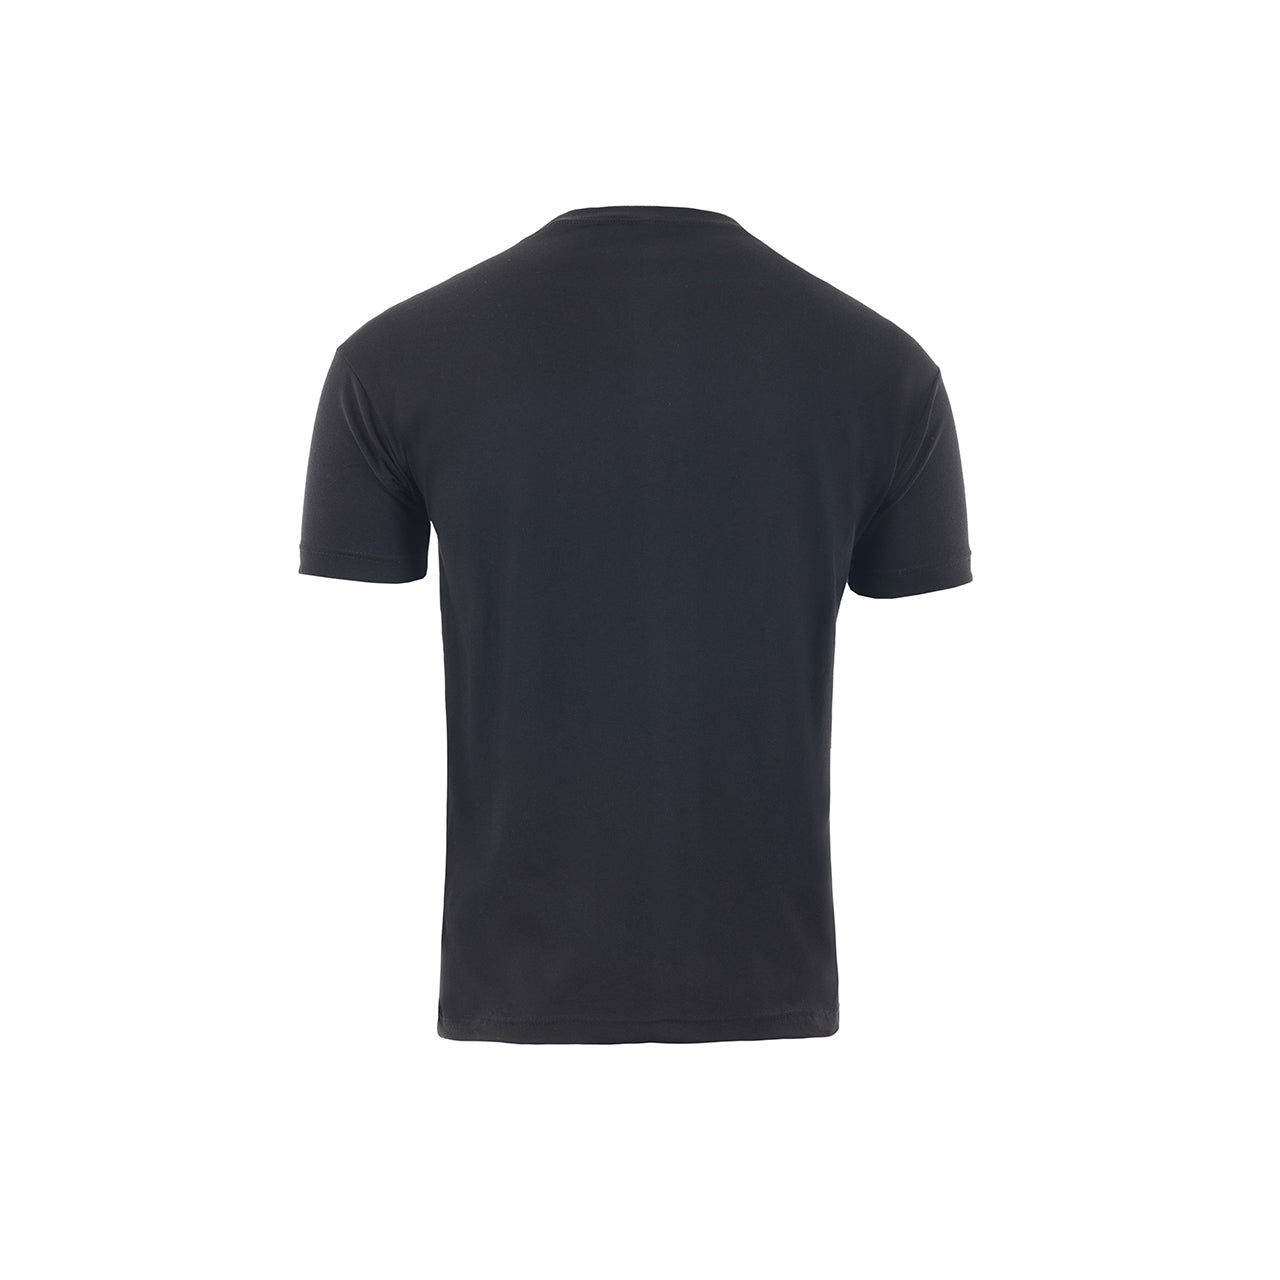 Ανδρικό T-Shirt (830) - BLACK - Panda Clothing